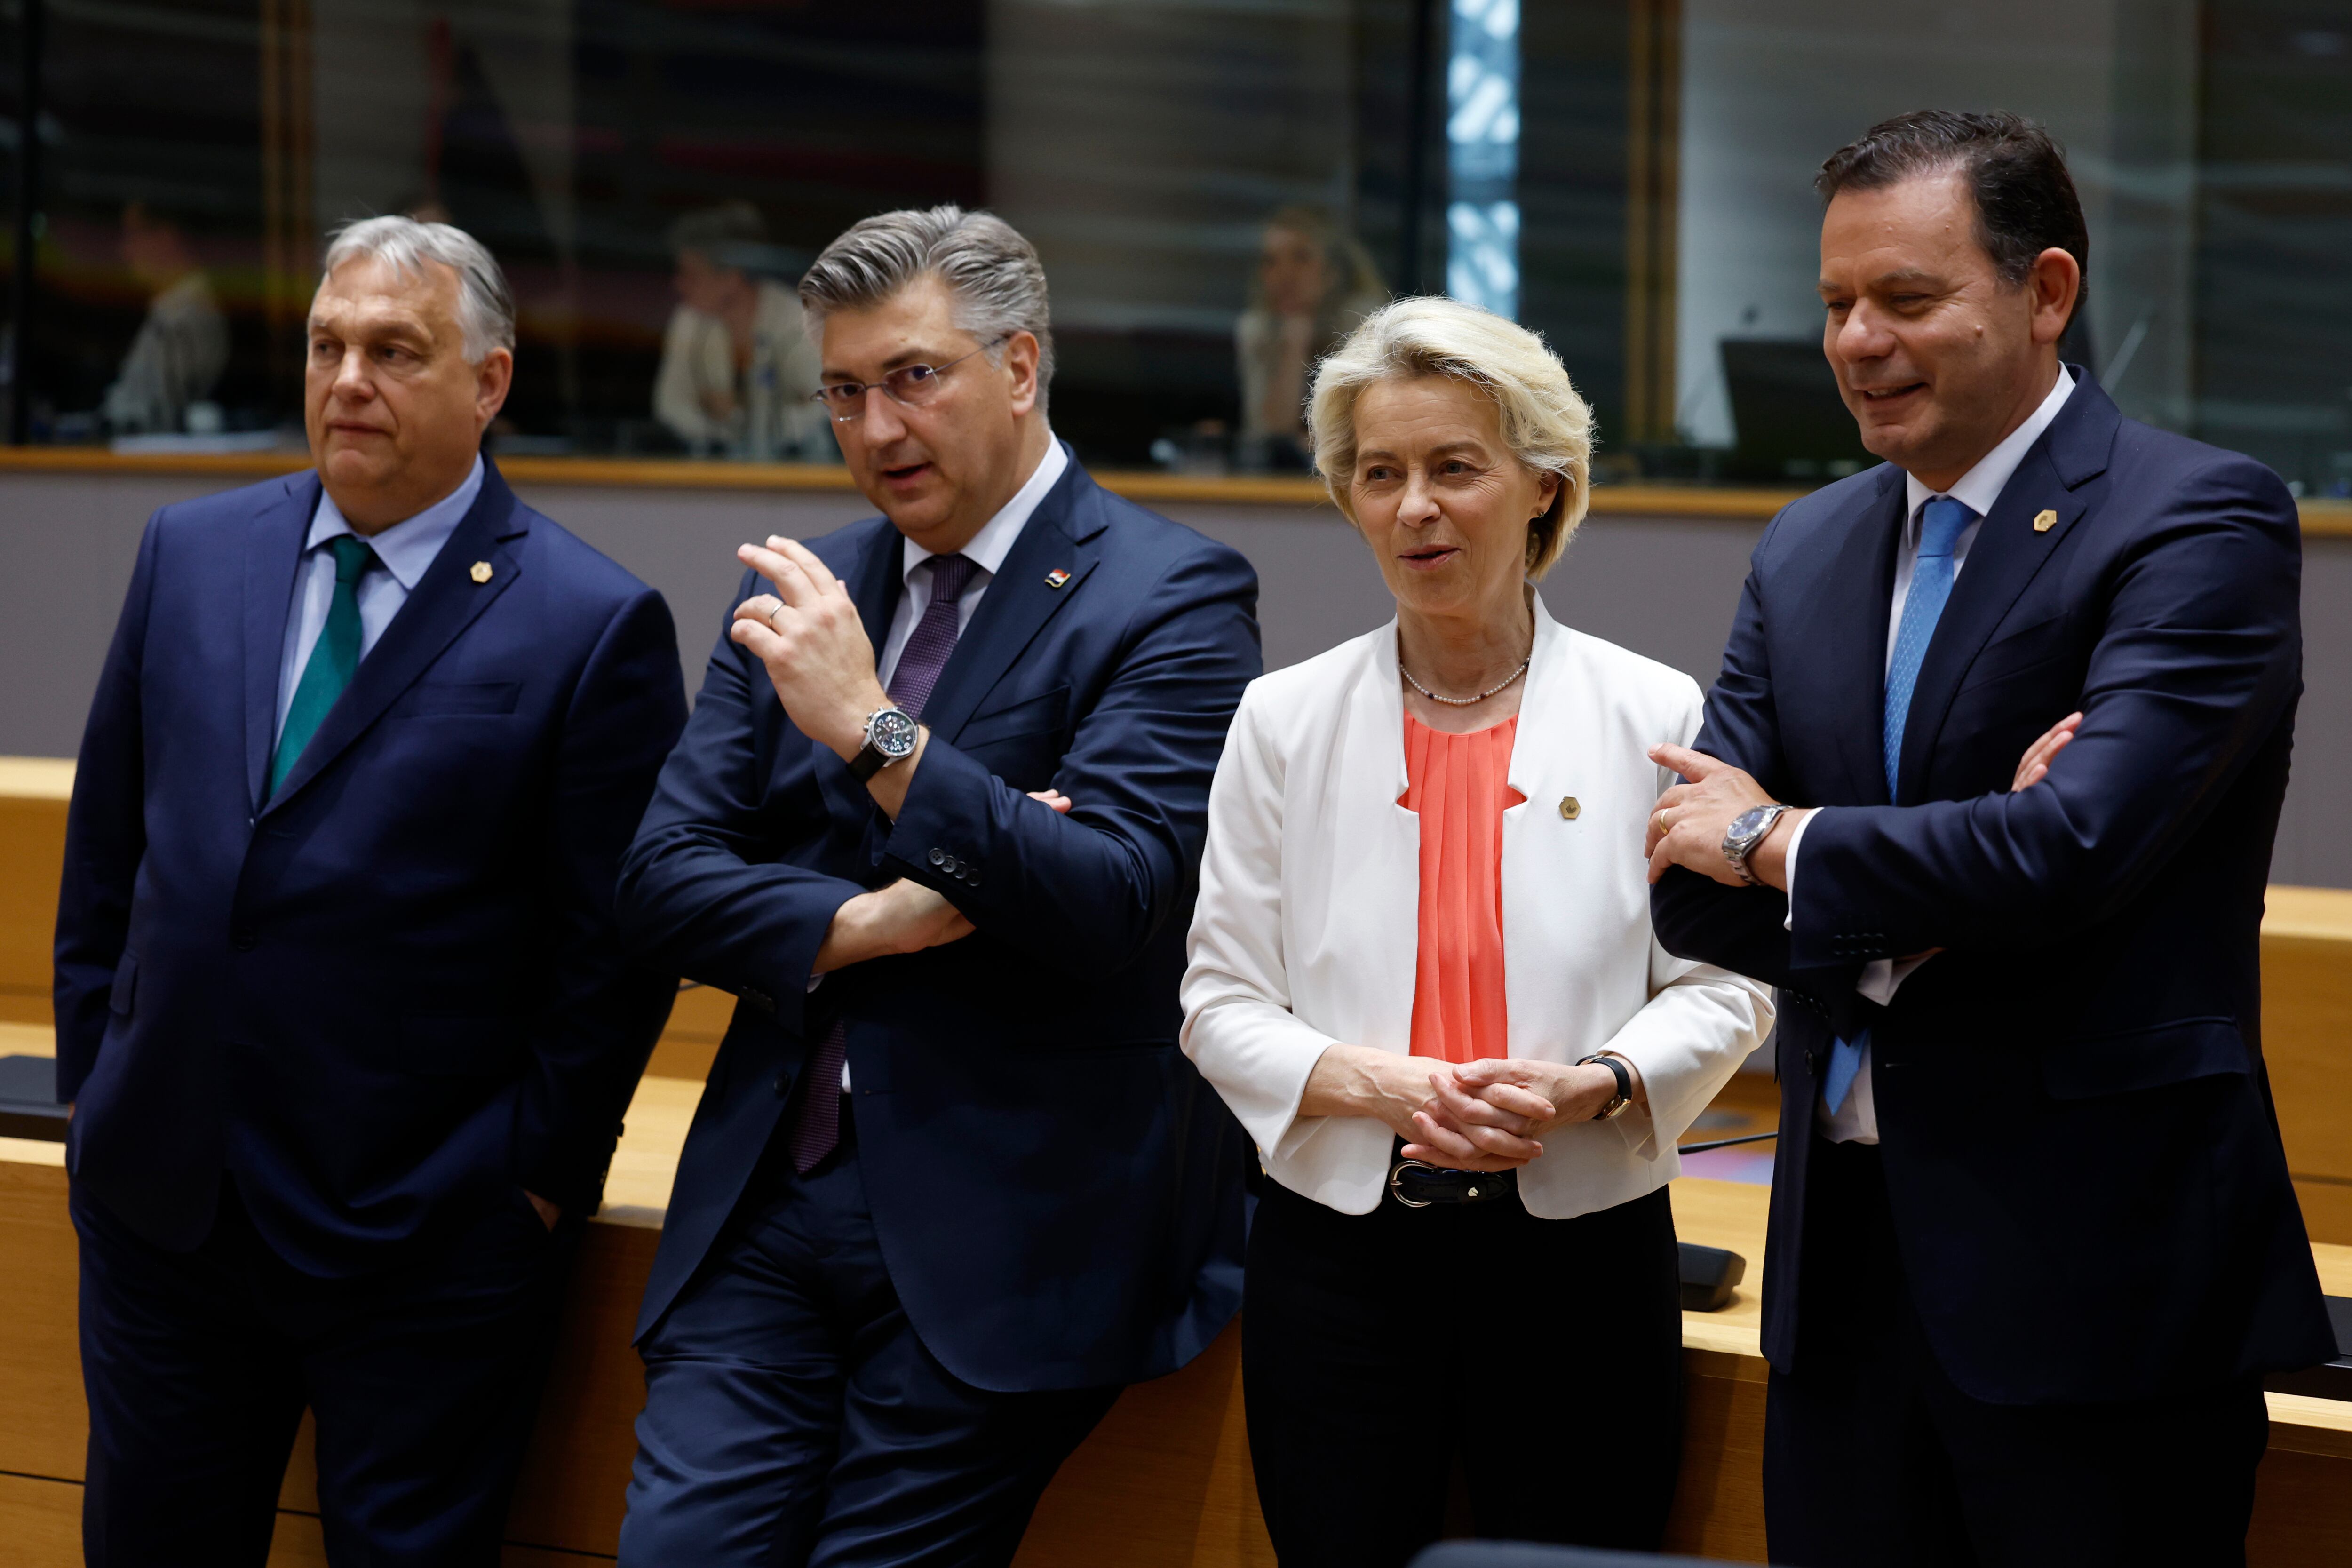 De izquierda a derecha, el primer ministro de Hungría, Viktor Orbán; el de Croacia, Andrej Plenkovic; la presidenta la Comisión Europea, Ursula von der Leyen; y el primer ministro de Portugal, Luís Montenegro, en Bruselas este lunes. 